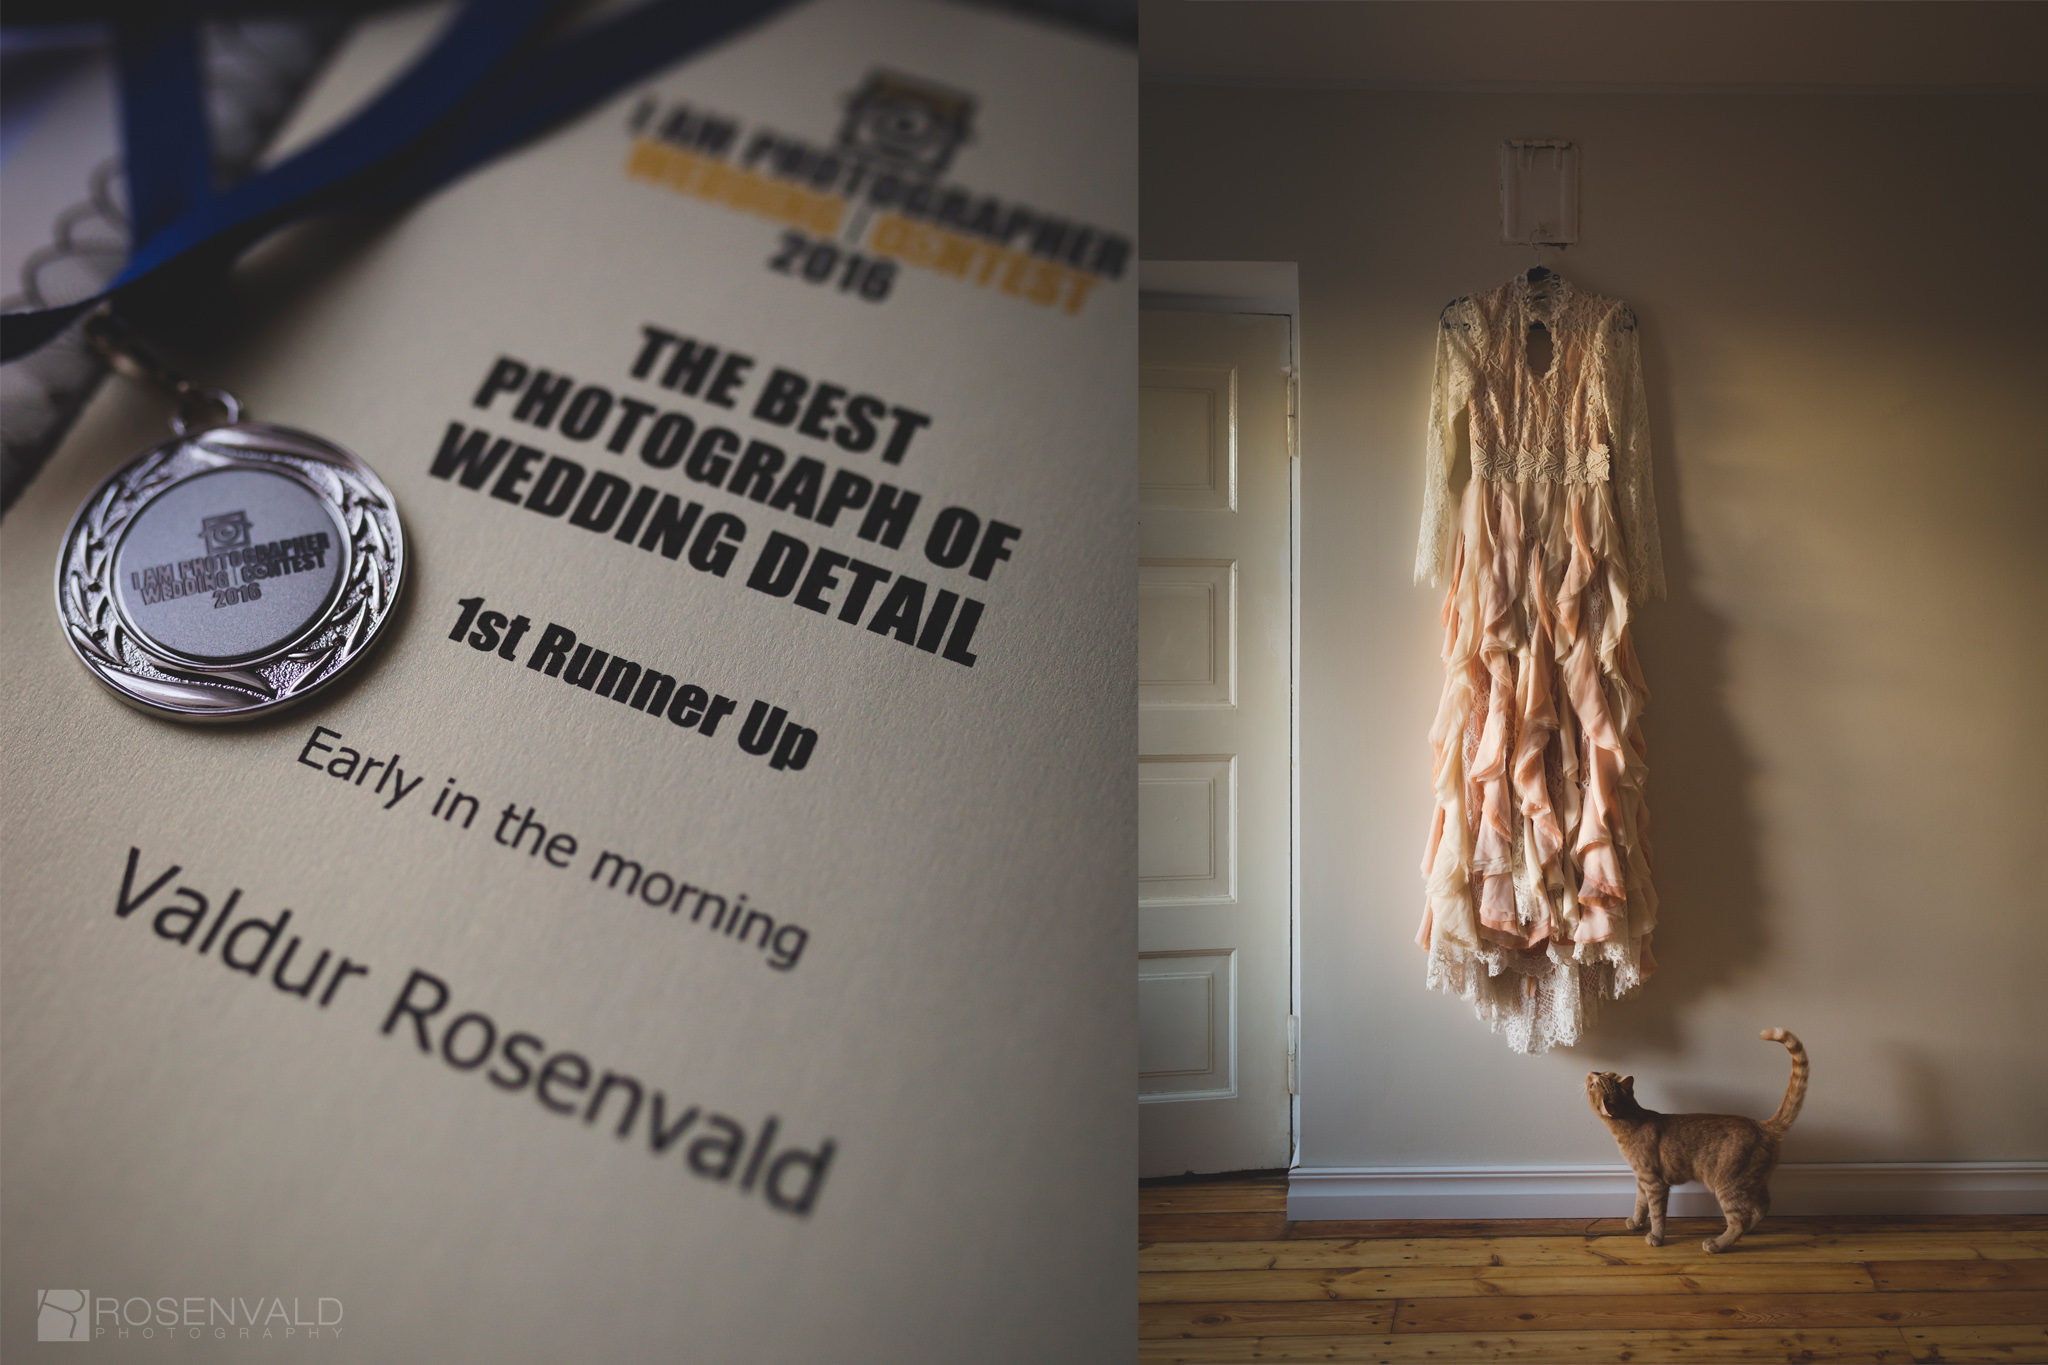 Pulmafotograaf Valdur Rosenvald — parim pulmafoto detail